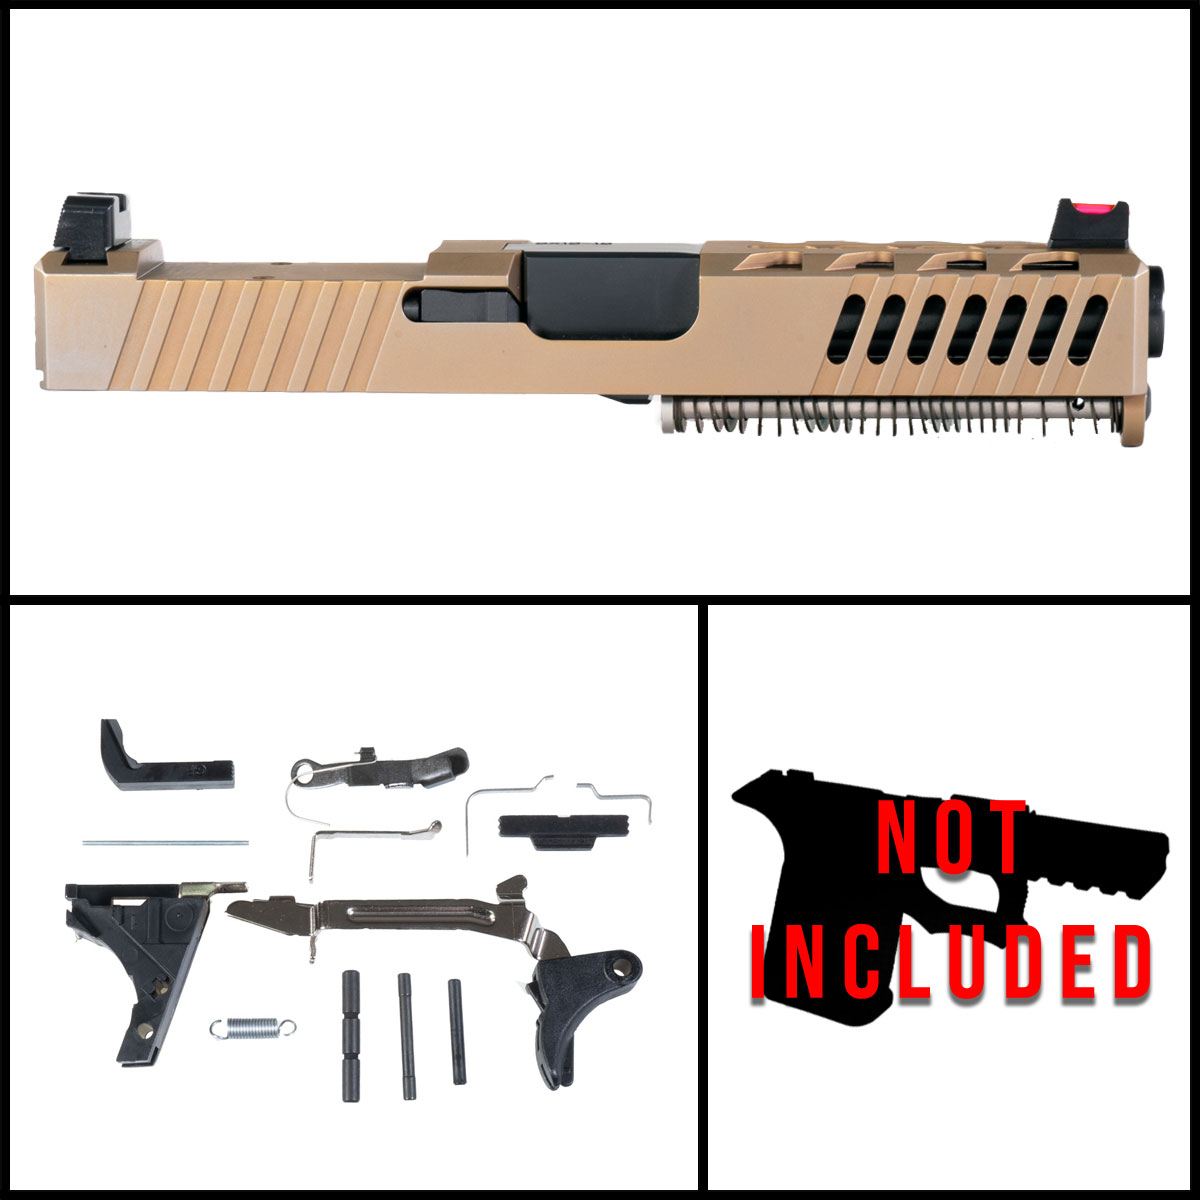 MMC '2833K' 9mm Full Pistol Build Kit (Everything Minus Frame) - Glock 19 Compatible